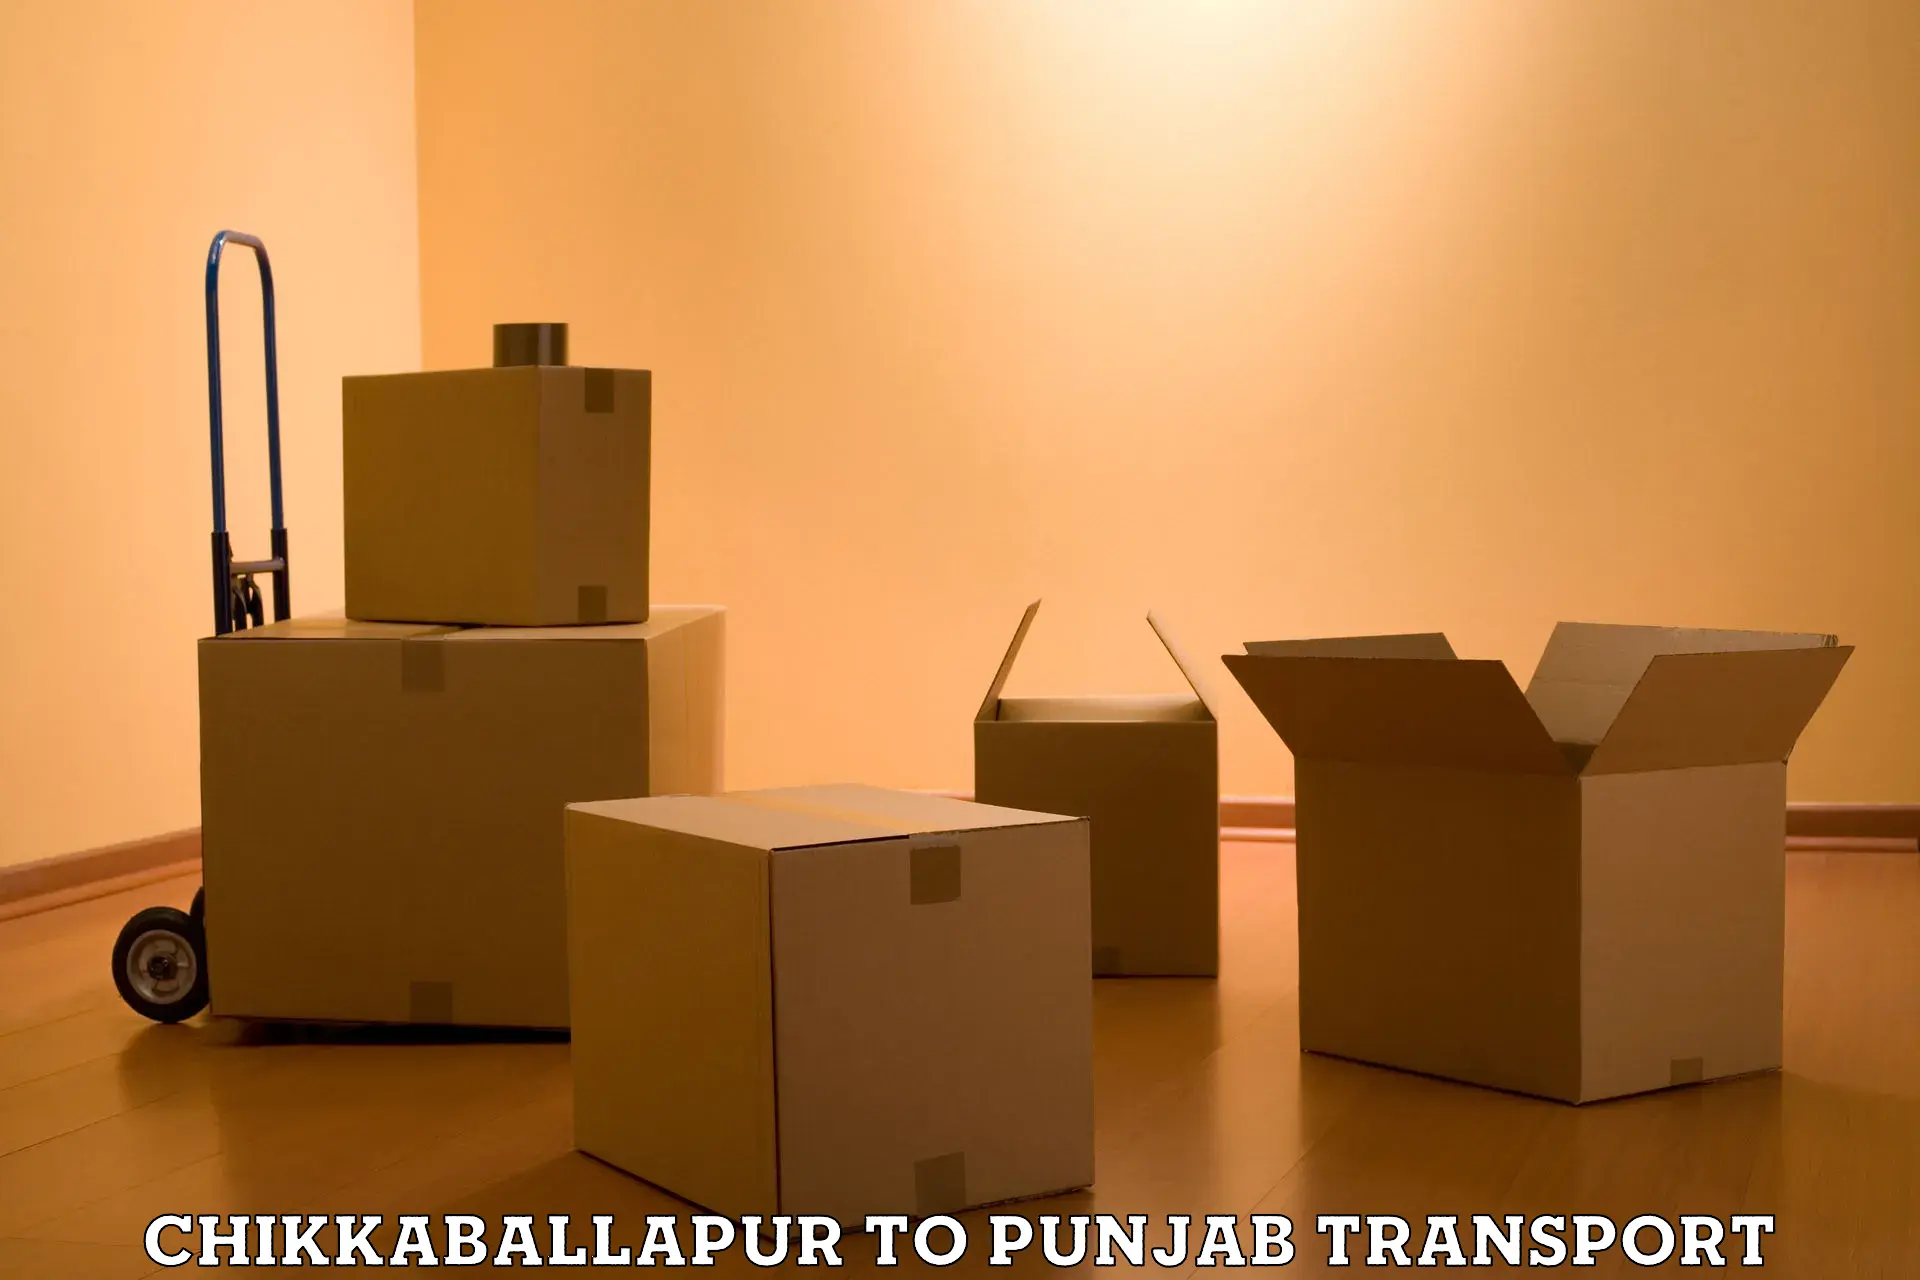 Transport in sharing Chikkaballapur to Zirakpur